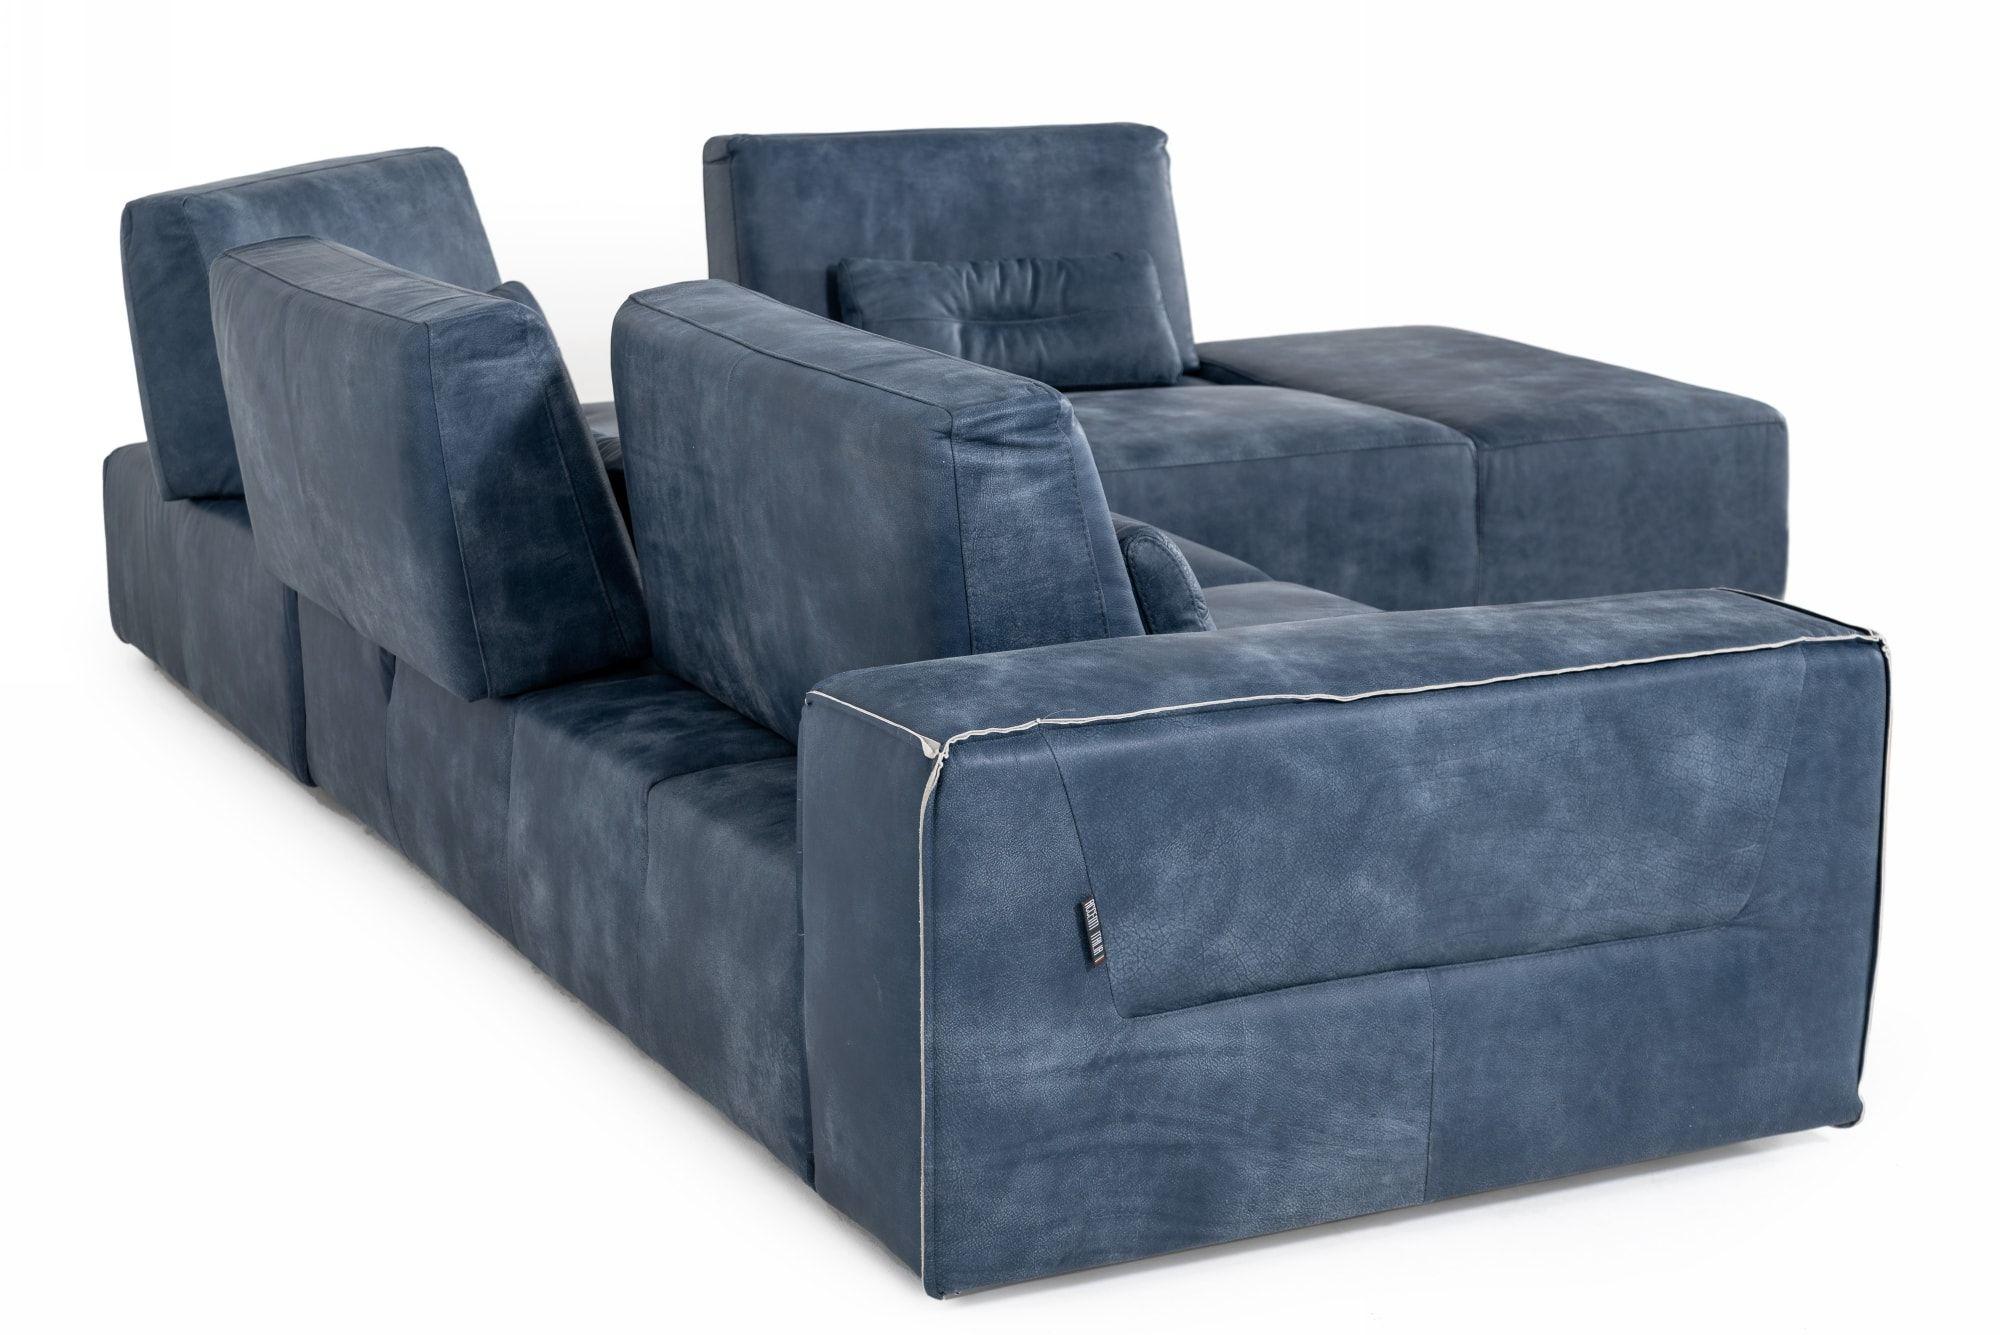 

    
VIG Furniture VGDDENJOY-DKBLUE Sectional Sofa Blue VGDDENJOY-DKBLUE
